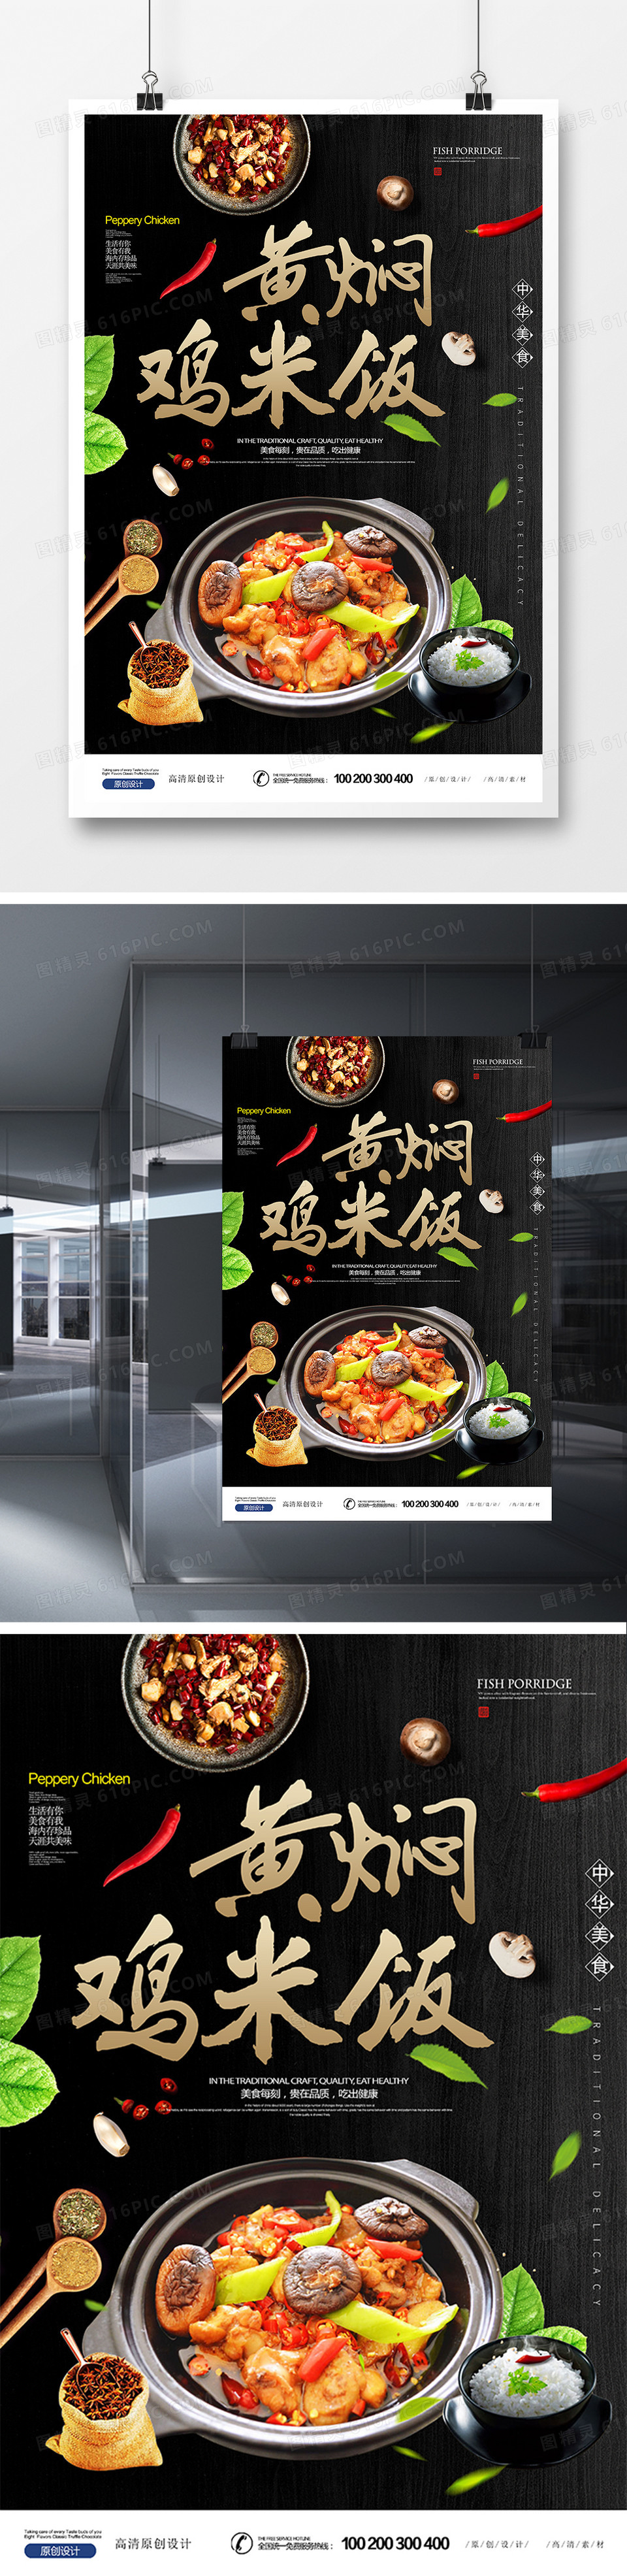 黄焖鸡米饭特殊餐饮美食海报设计